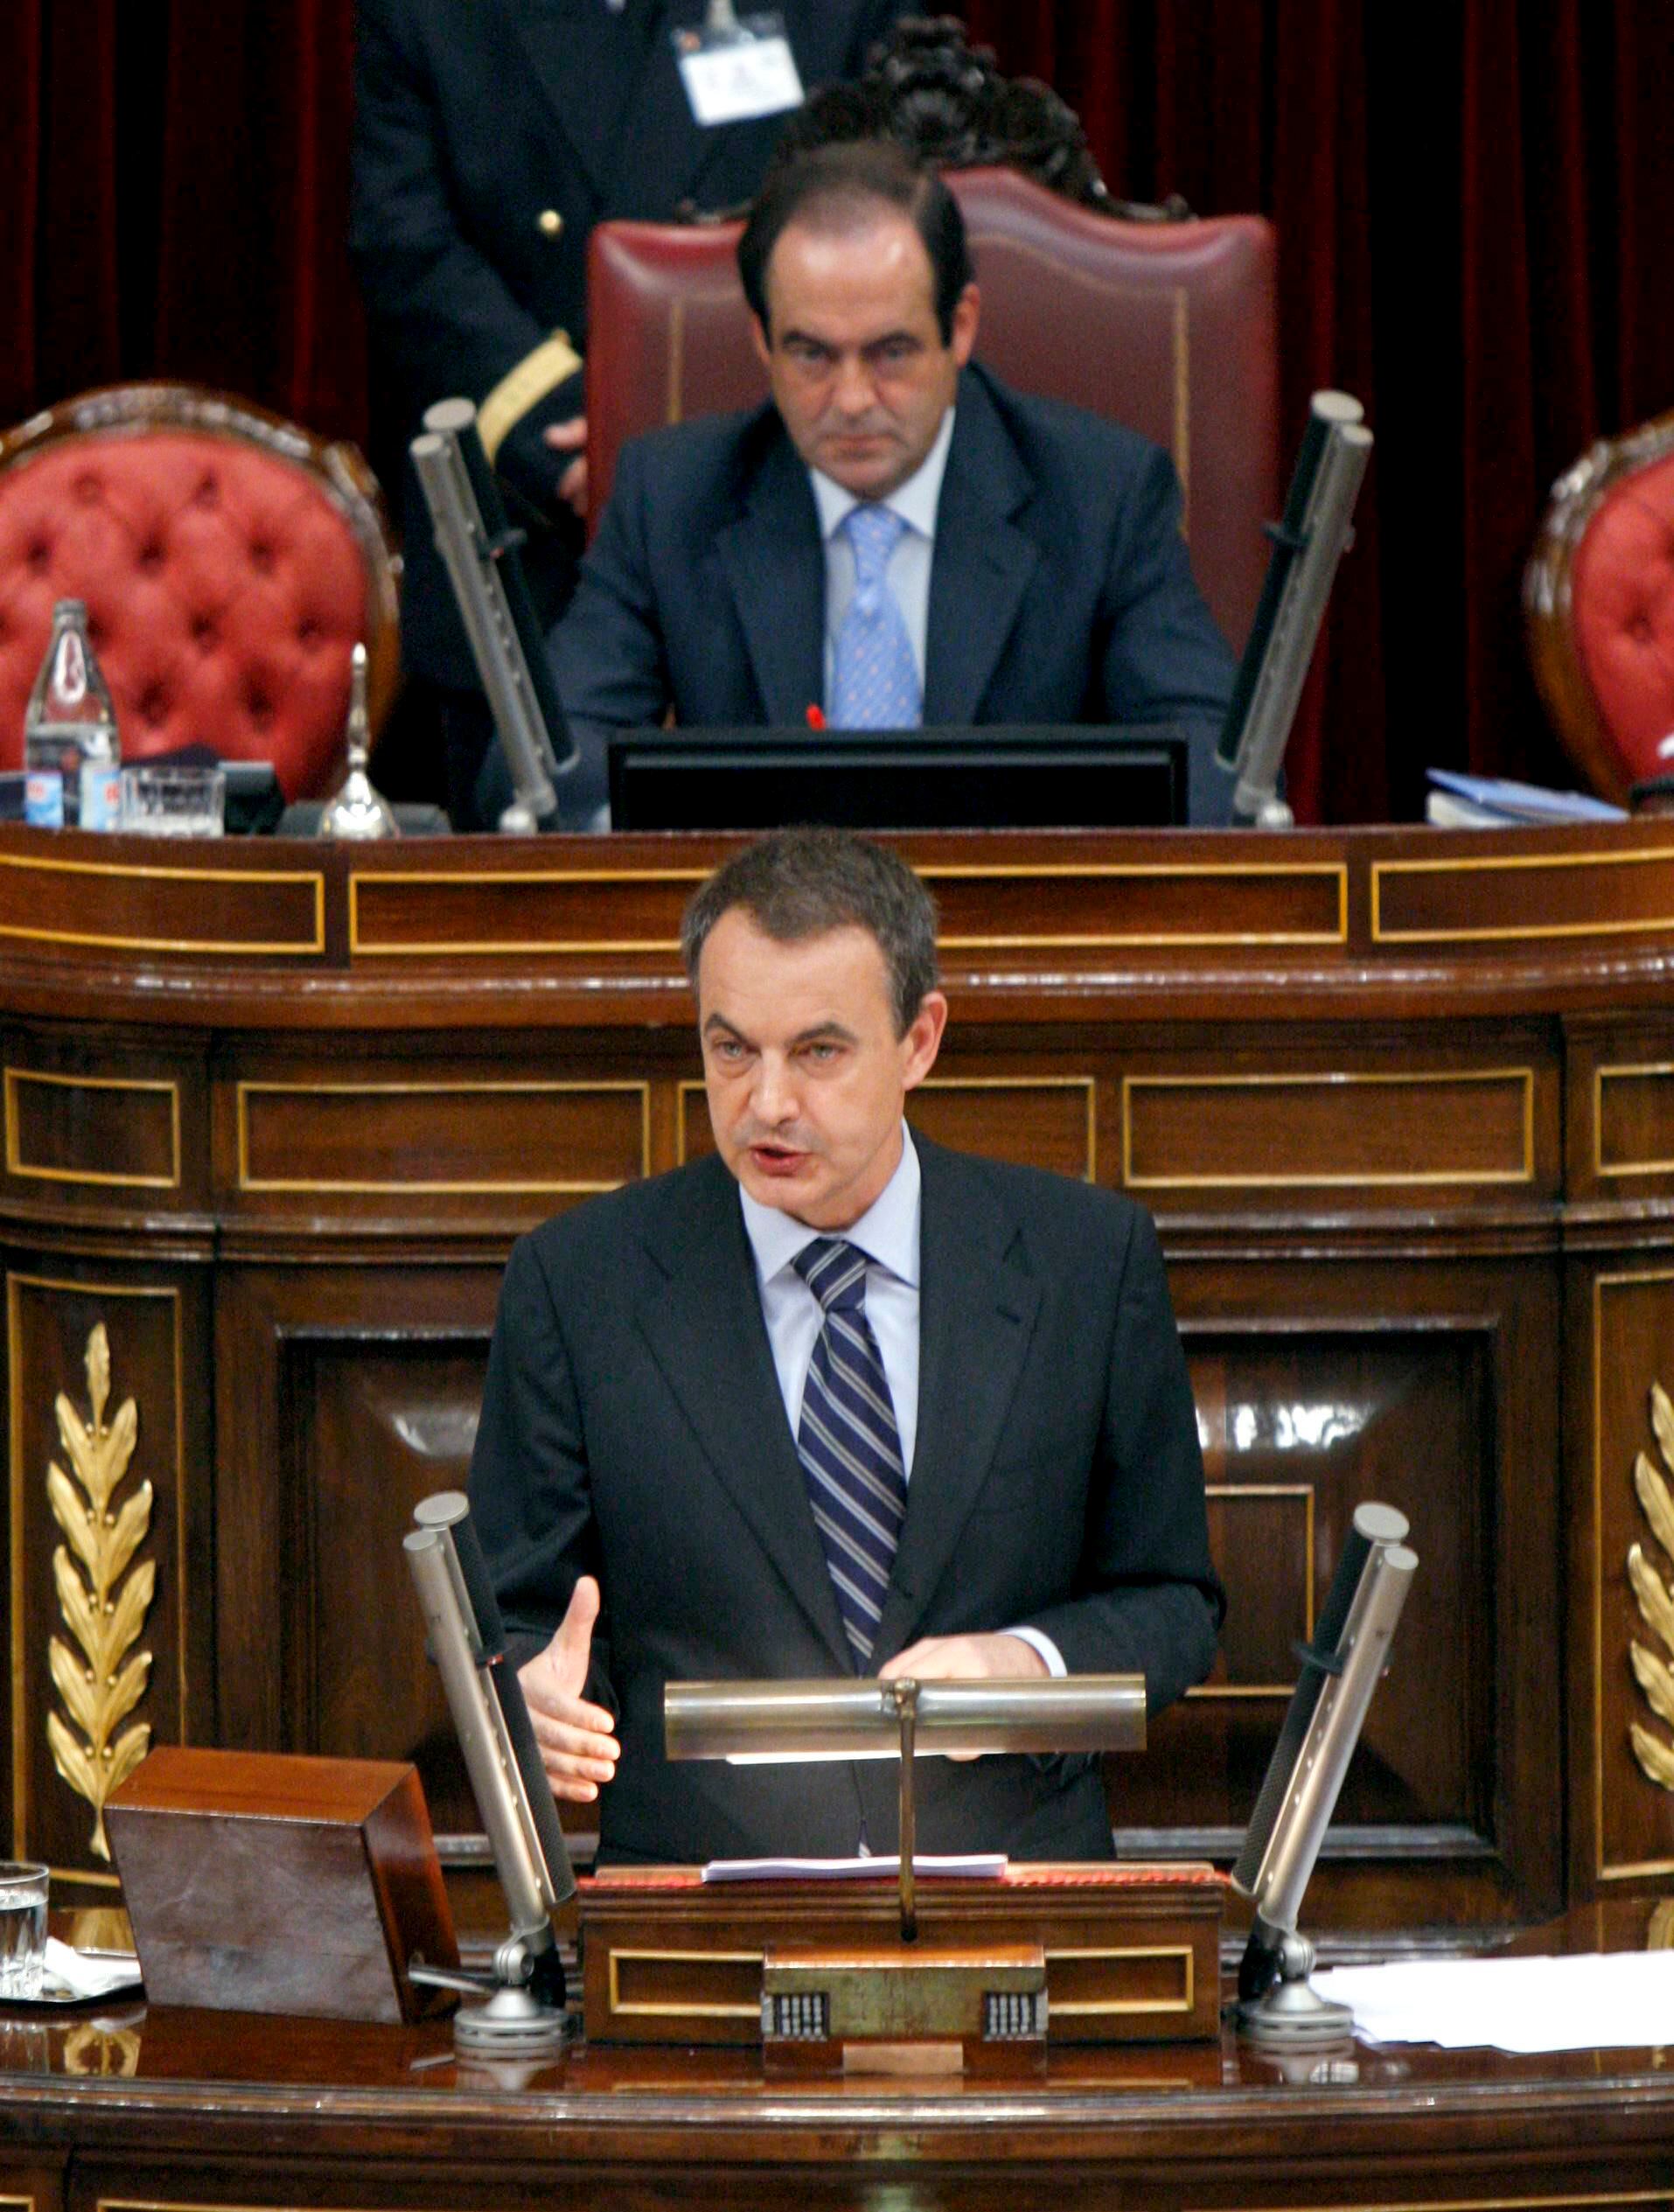 El presidente del Gobierno en funciones, José Luis Rodríguez Zapatero, durante su discurso en el debate de investidura, el 8 de abril de 2008. Tras él, el presidente de la Cámara baja, José Bono.